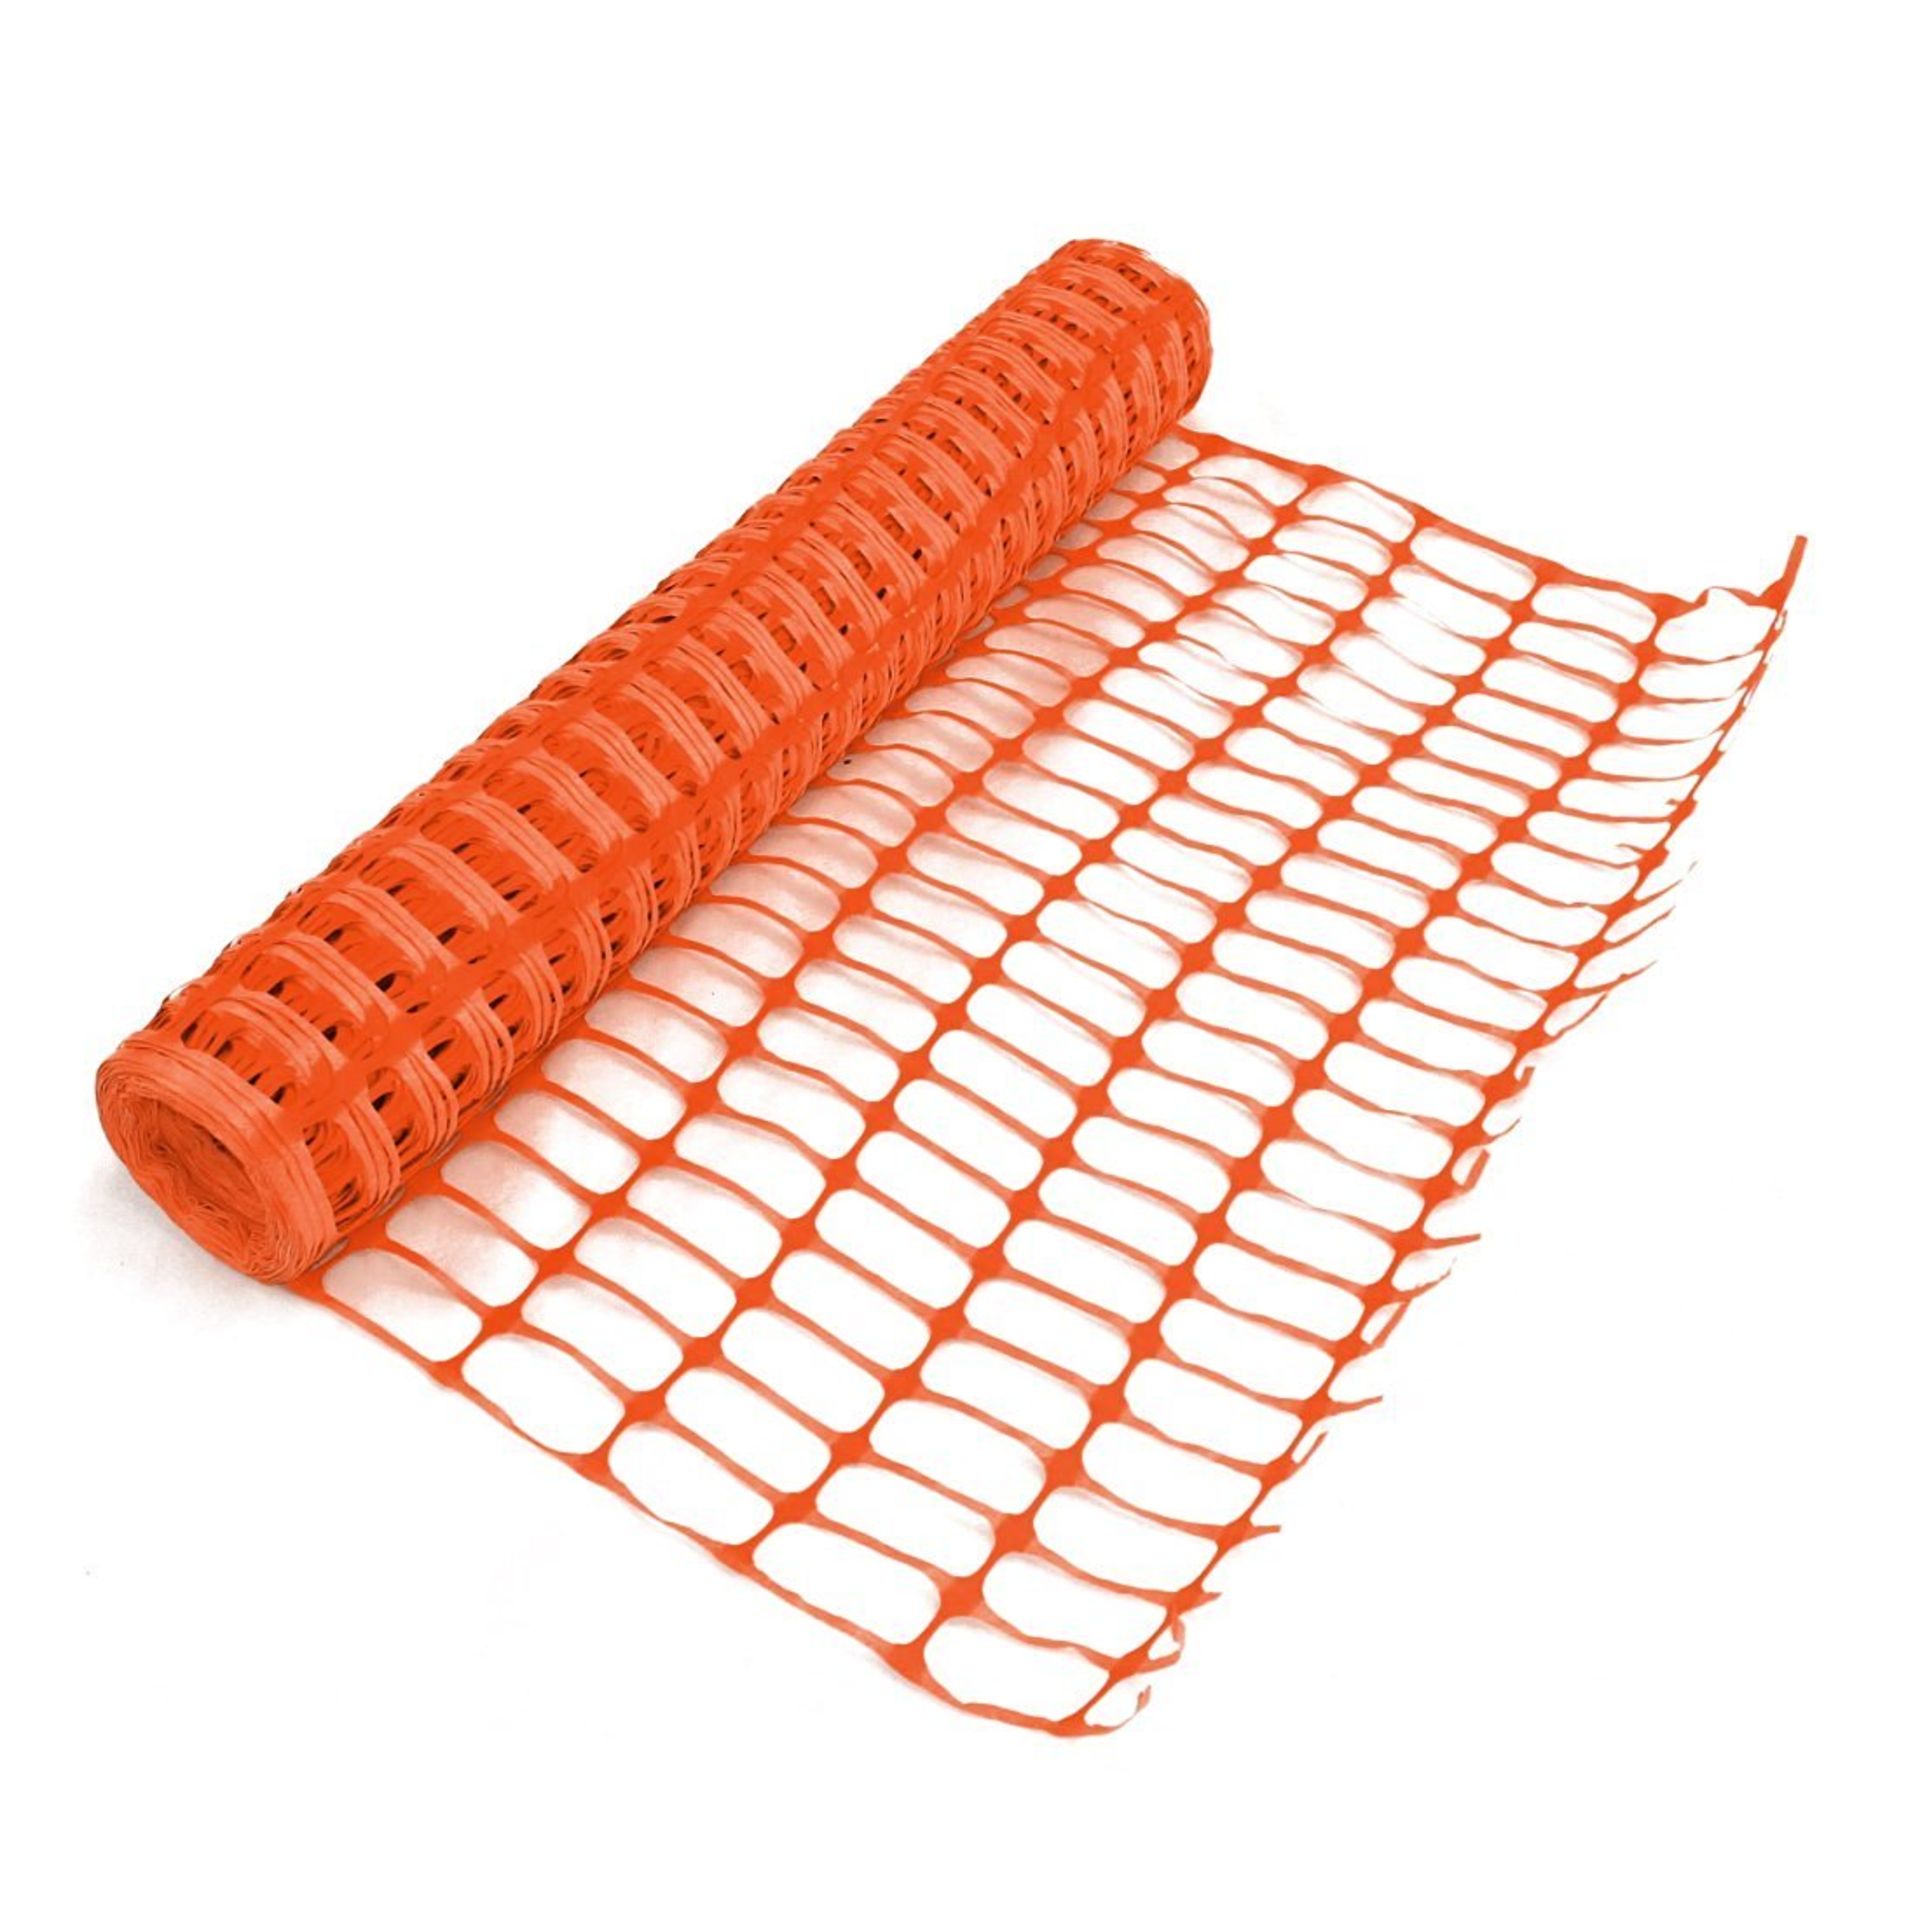 (F11) Heavy Duty Orange Safety Barrier Mesh Fencing 1mtr x 25mtr Roll Dimensions 1m x 25m Dur...